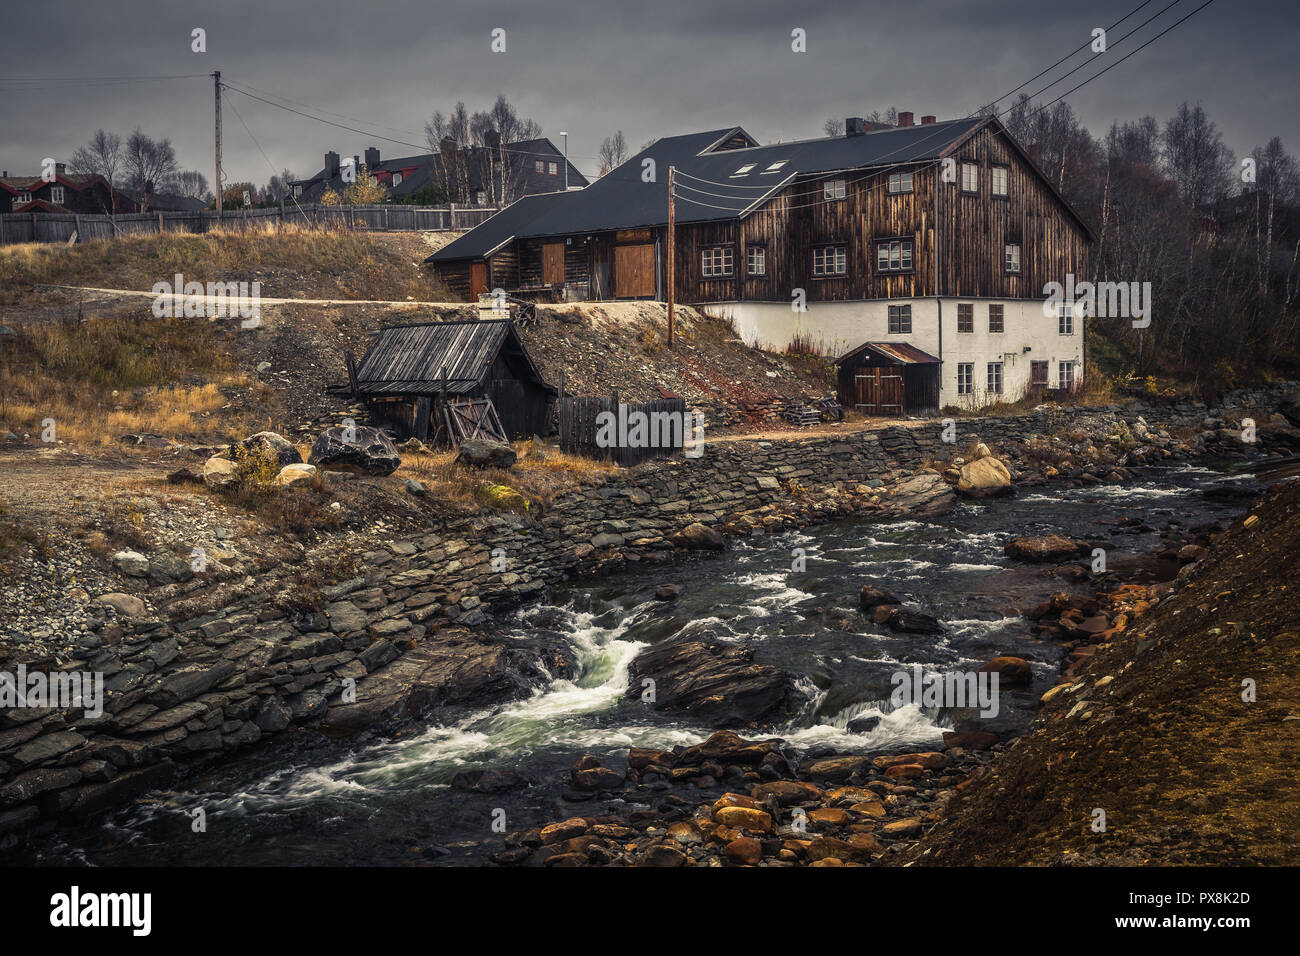 Ville minière de Røros la Norvège, vieille ville d'origine fantastique norvégien, défini comme site du patrimoine mondial de l'UNESCO. Une architecture traditionnelle en bois. Banque D'Images